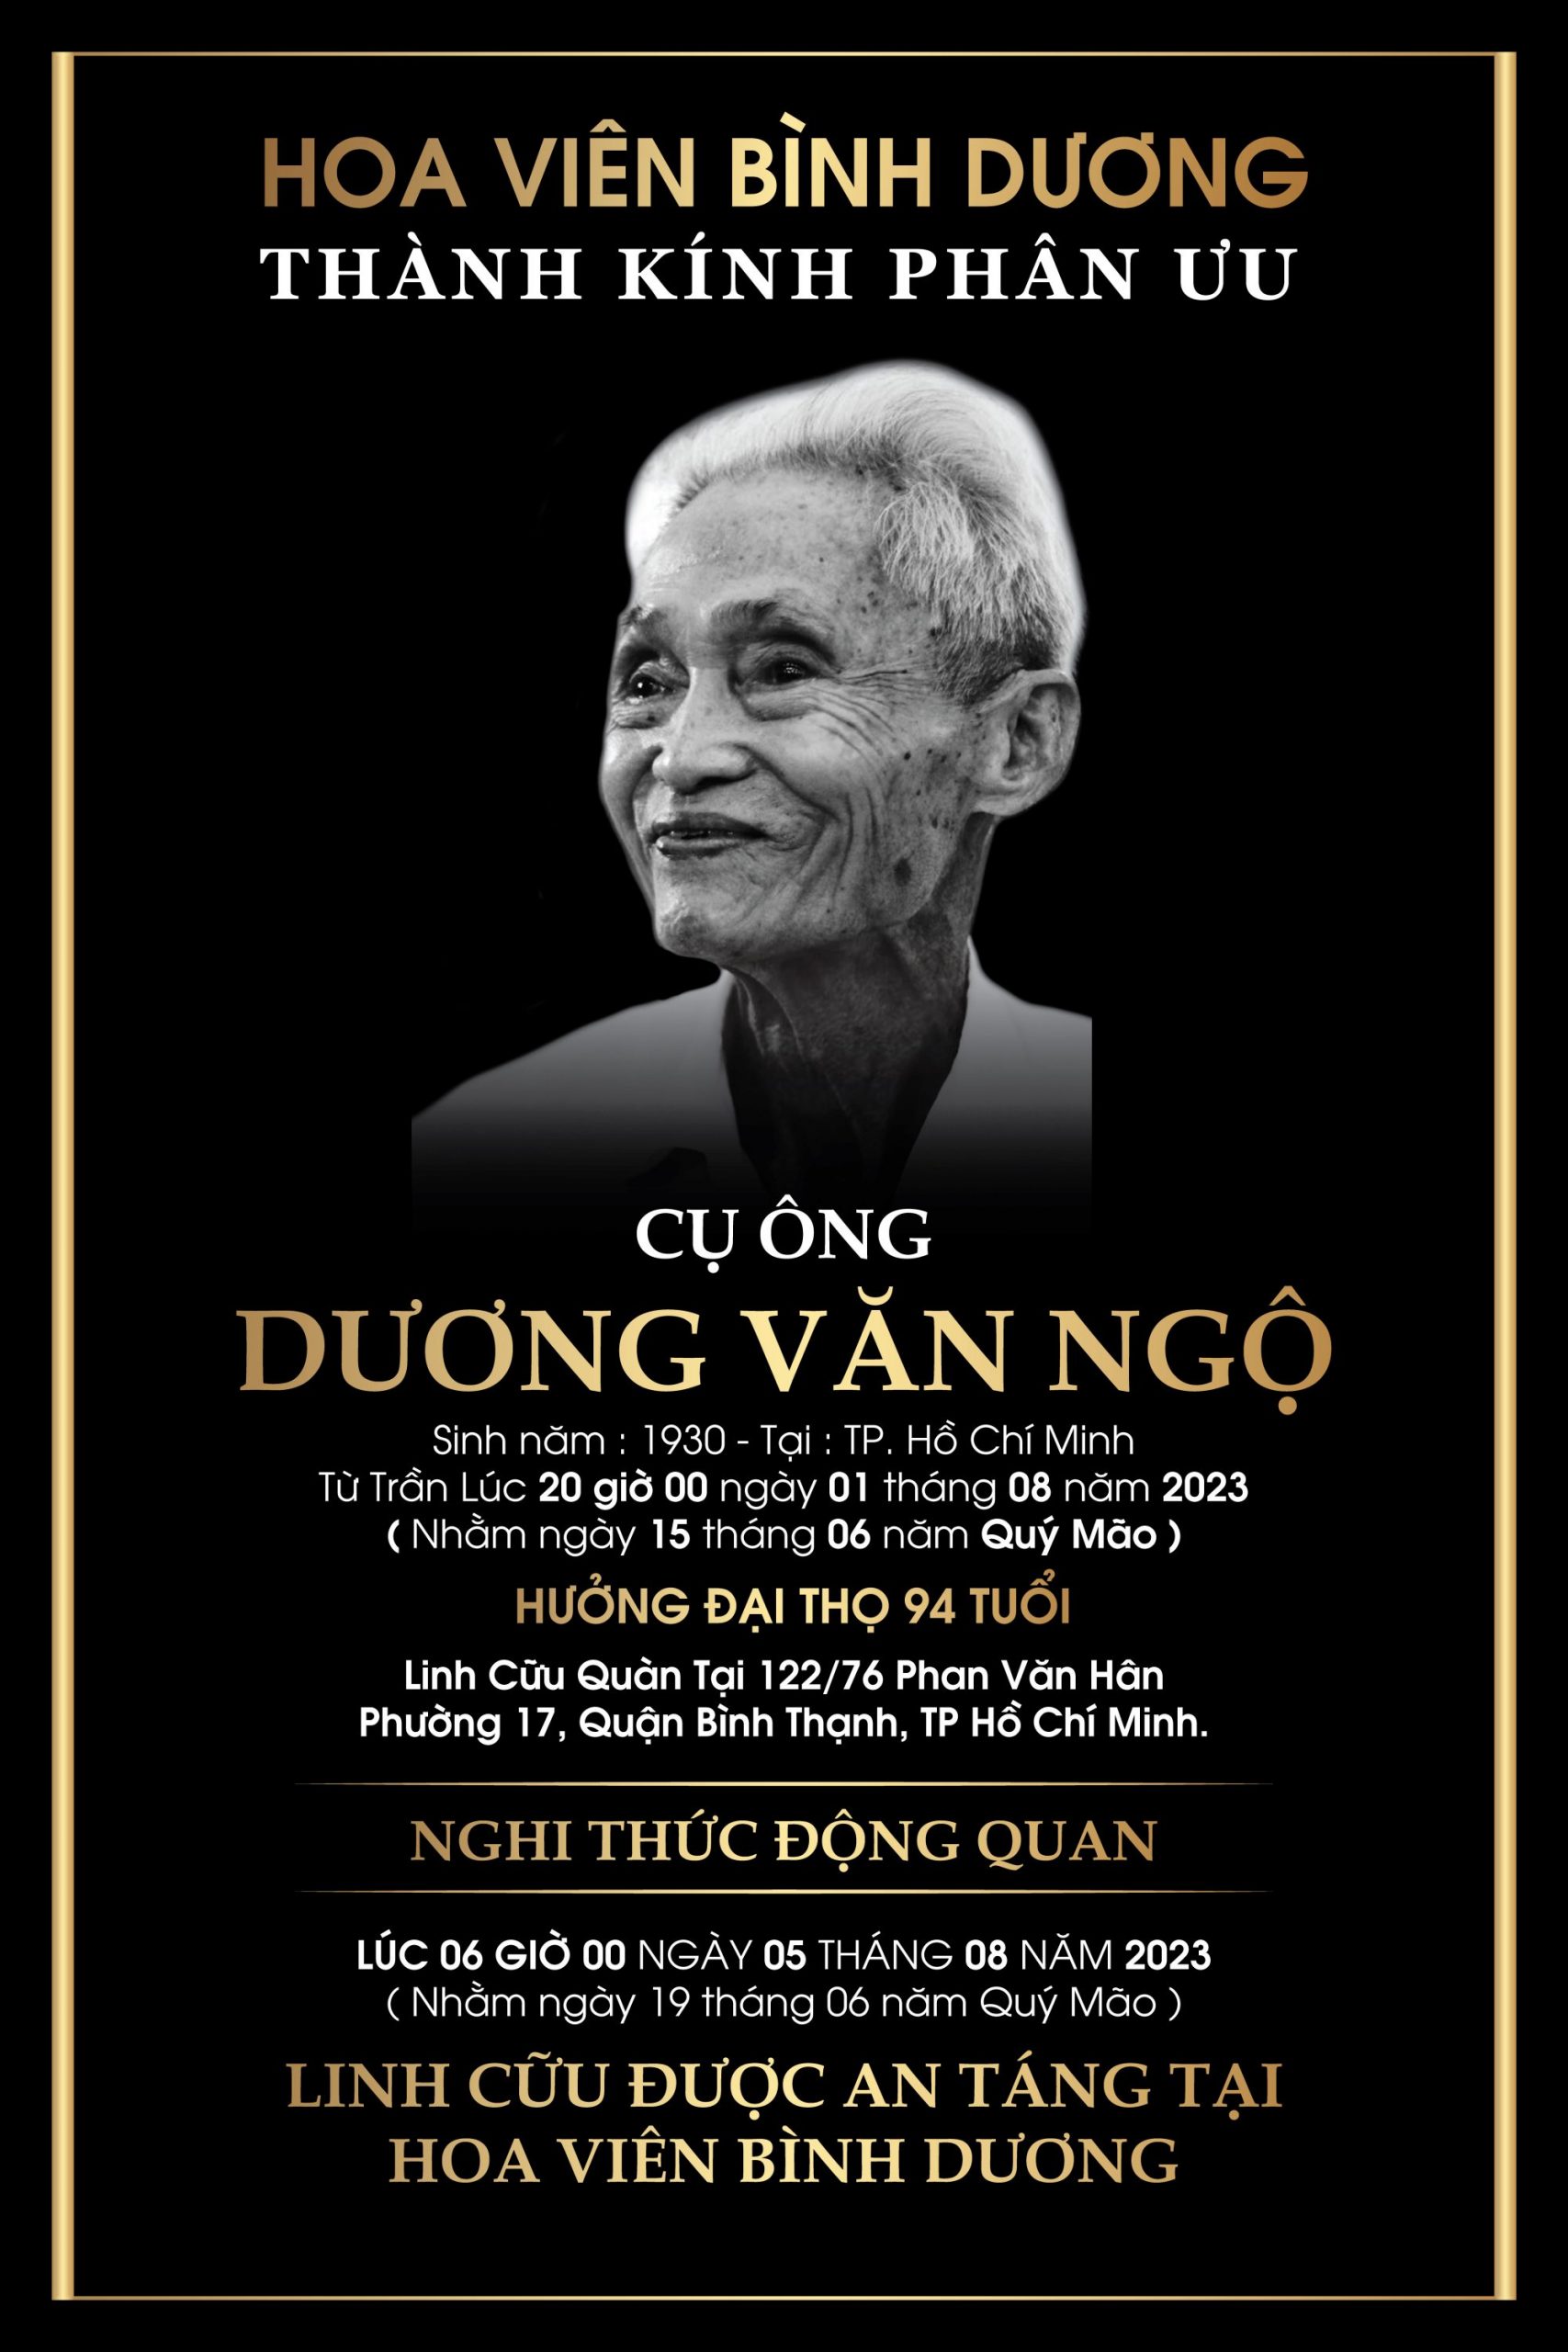 Hoa Viên Bình Dương tặng phần mộ cho Cụ ông Dương Văn Ngộ - Người viết thư tay xuyên hai thế kỷ ở Bưu điện TP HCM trên đường Nghệ Sĩ